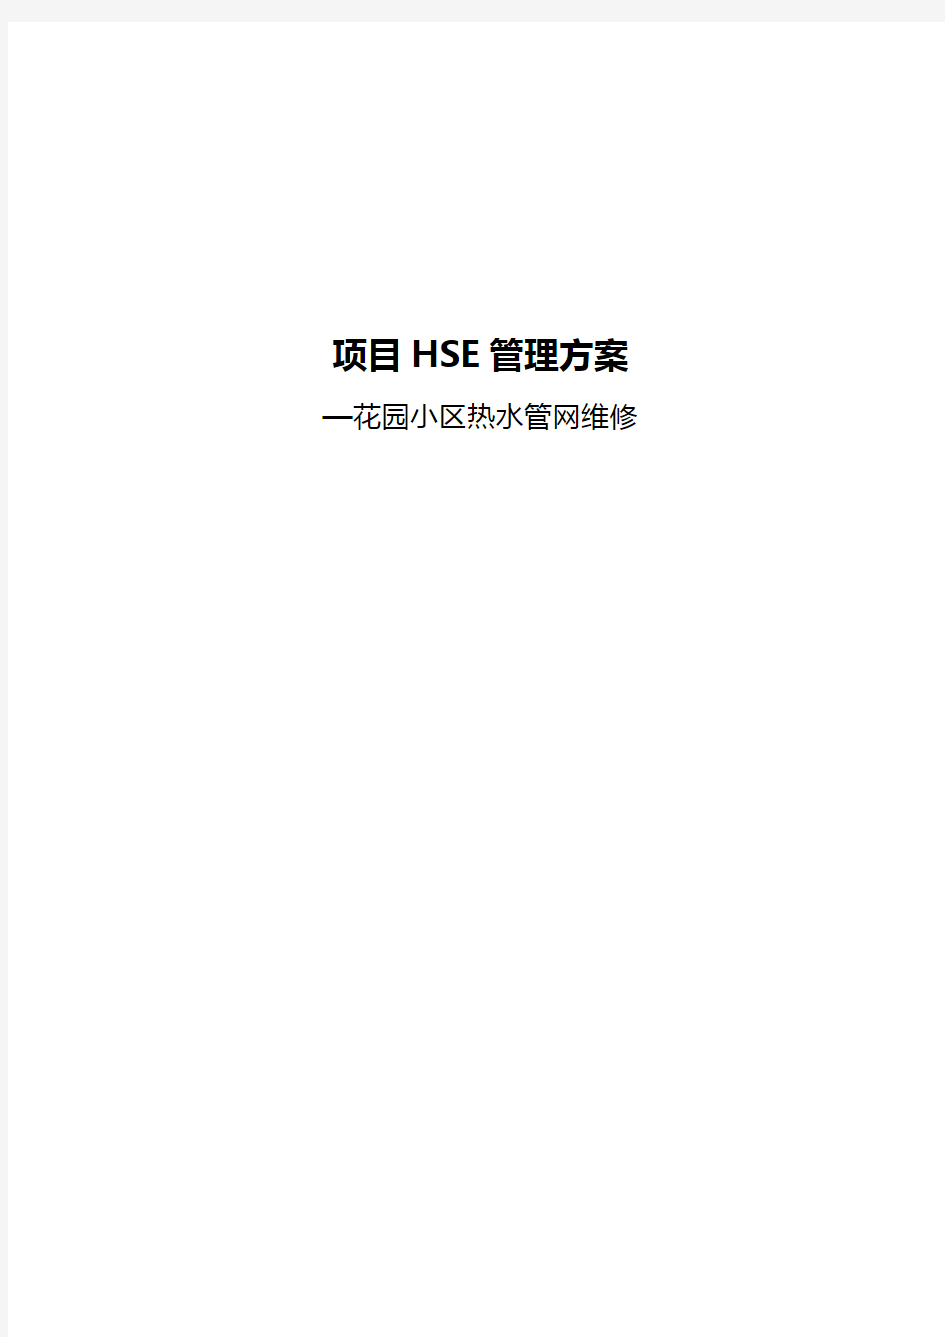 工程HSE管理方案说明